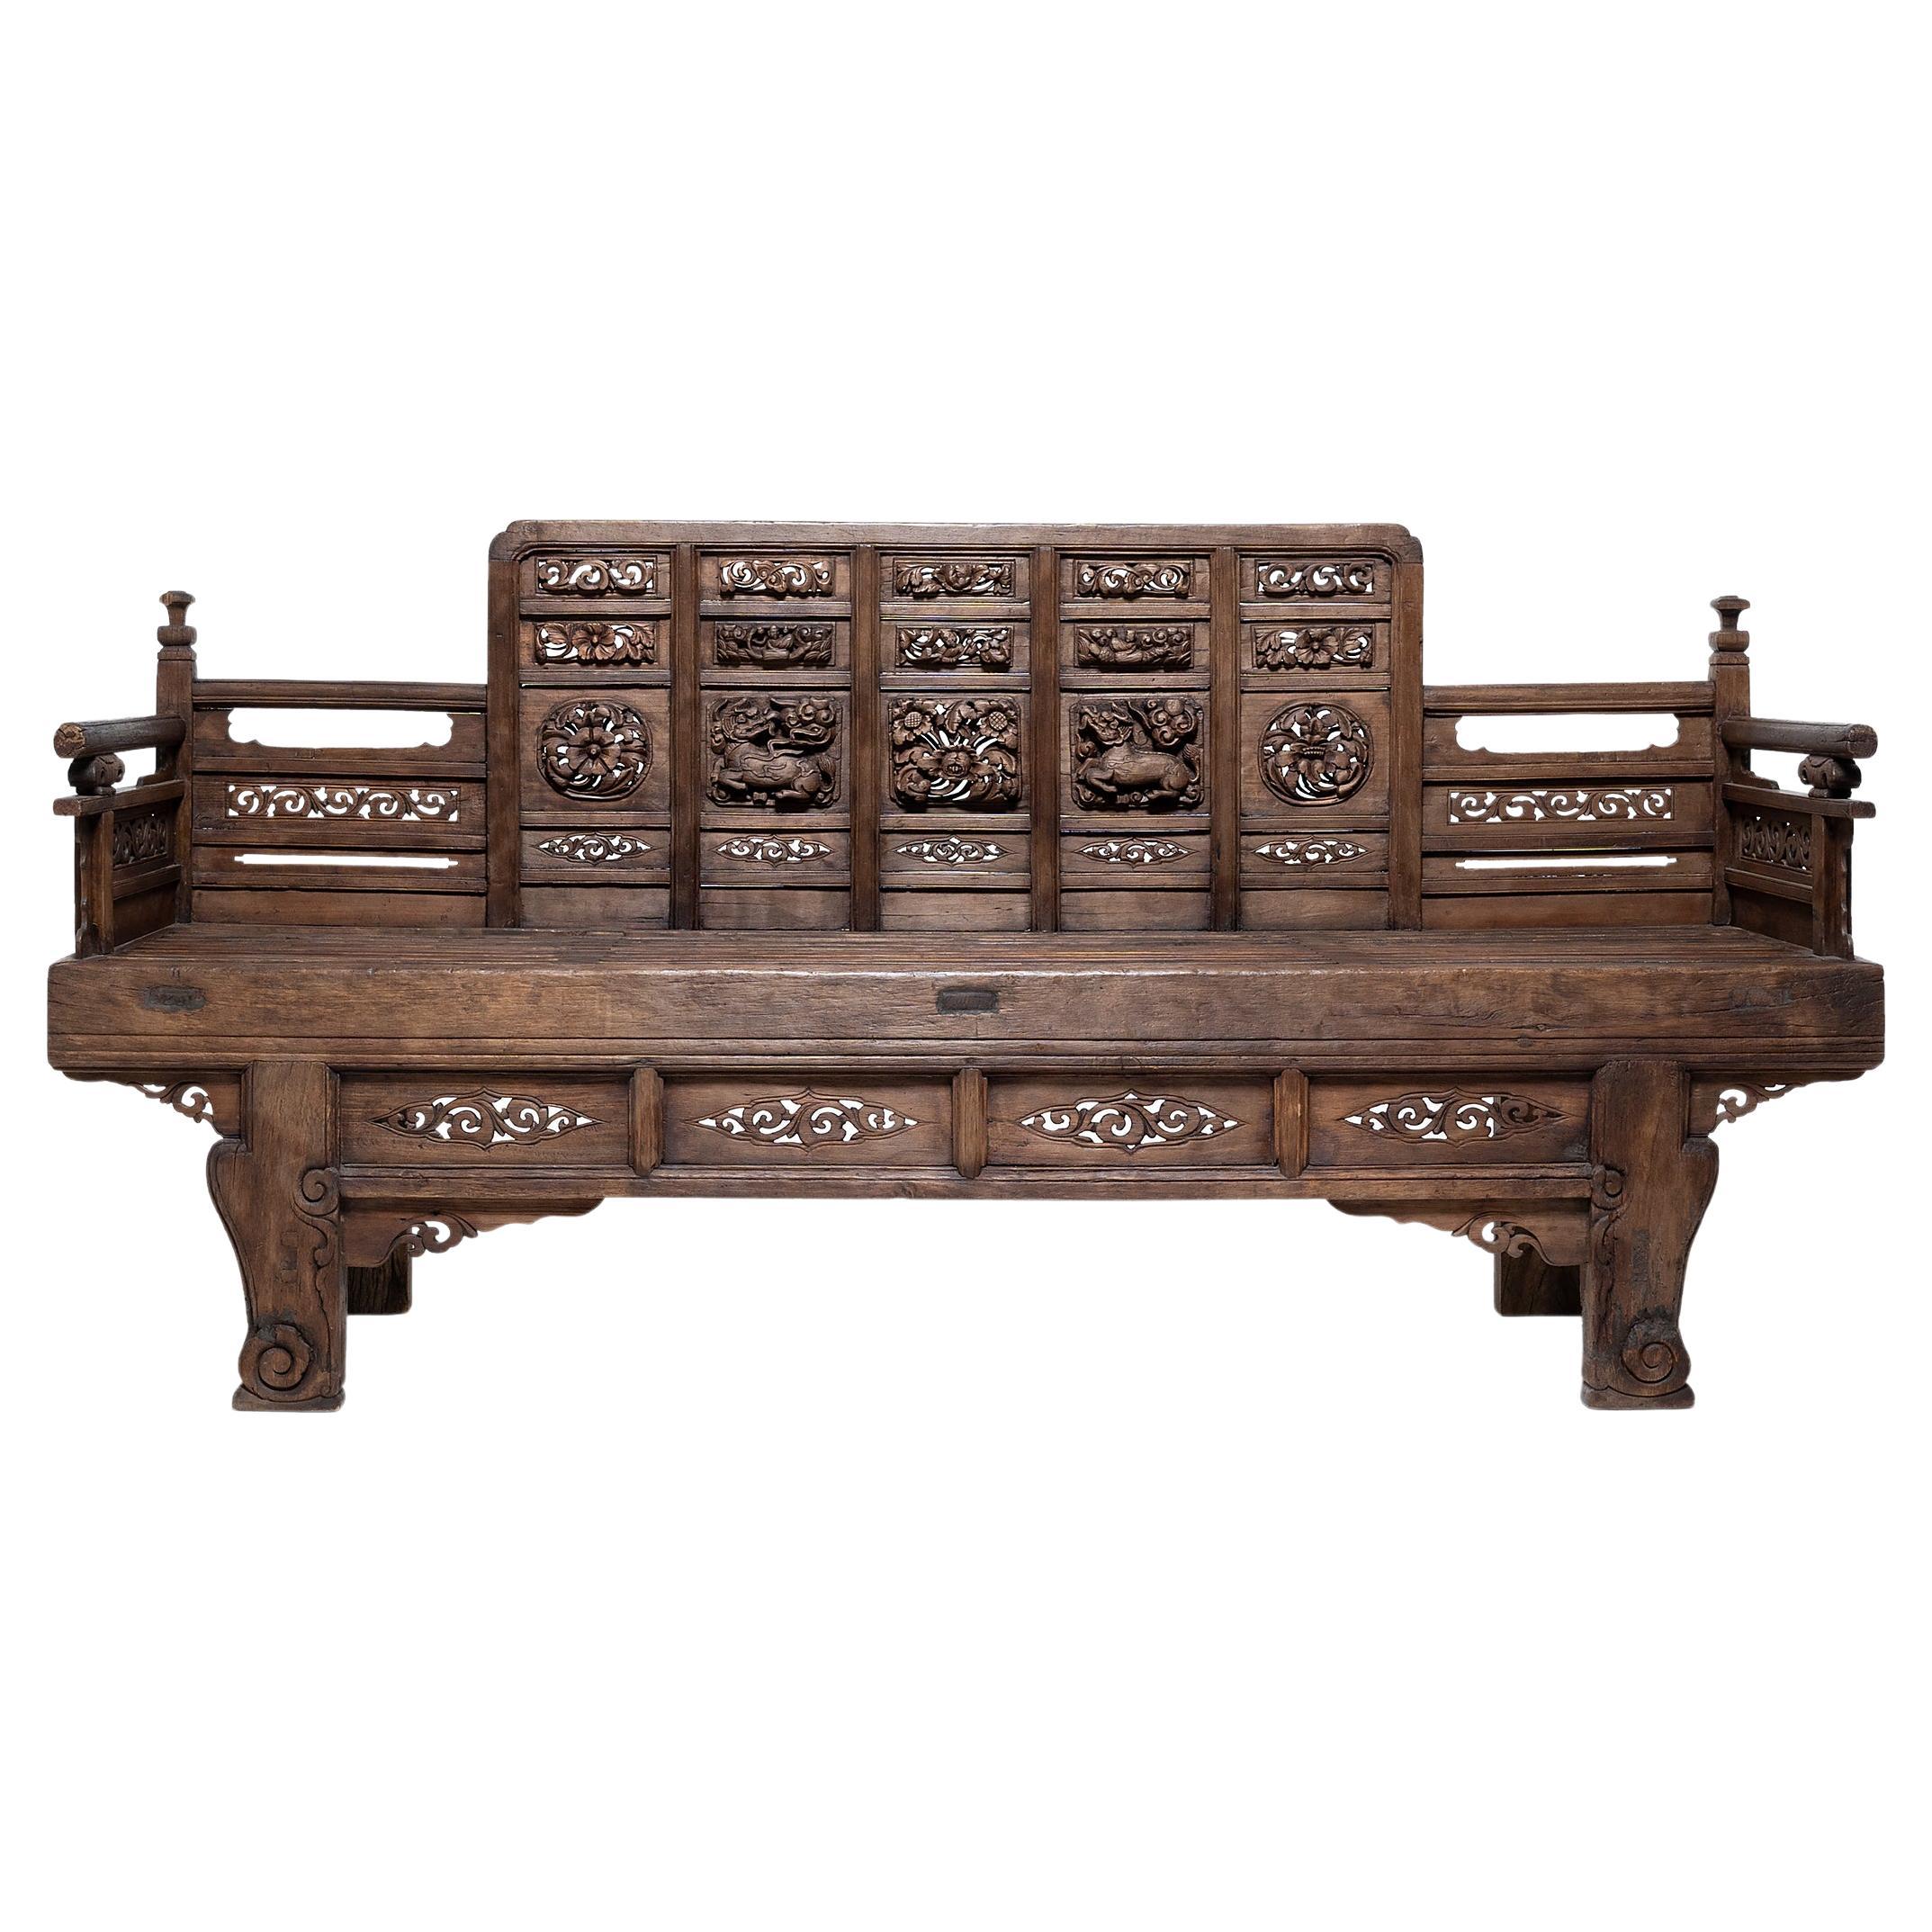 Aufwändig geschnitztes chinesisches Luohan-Bett, um 1550